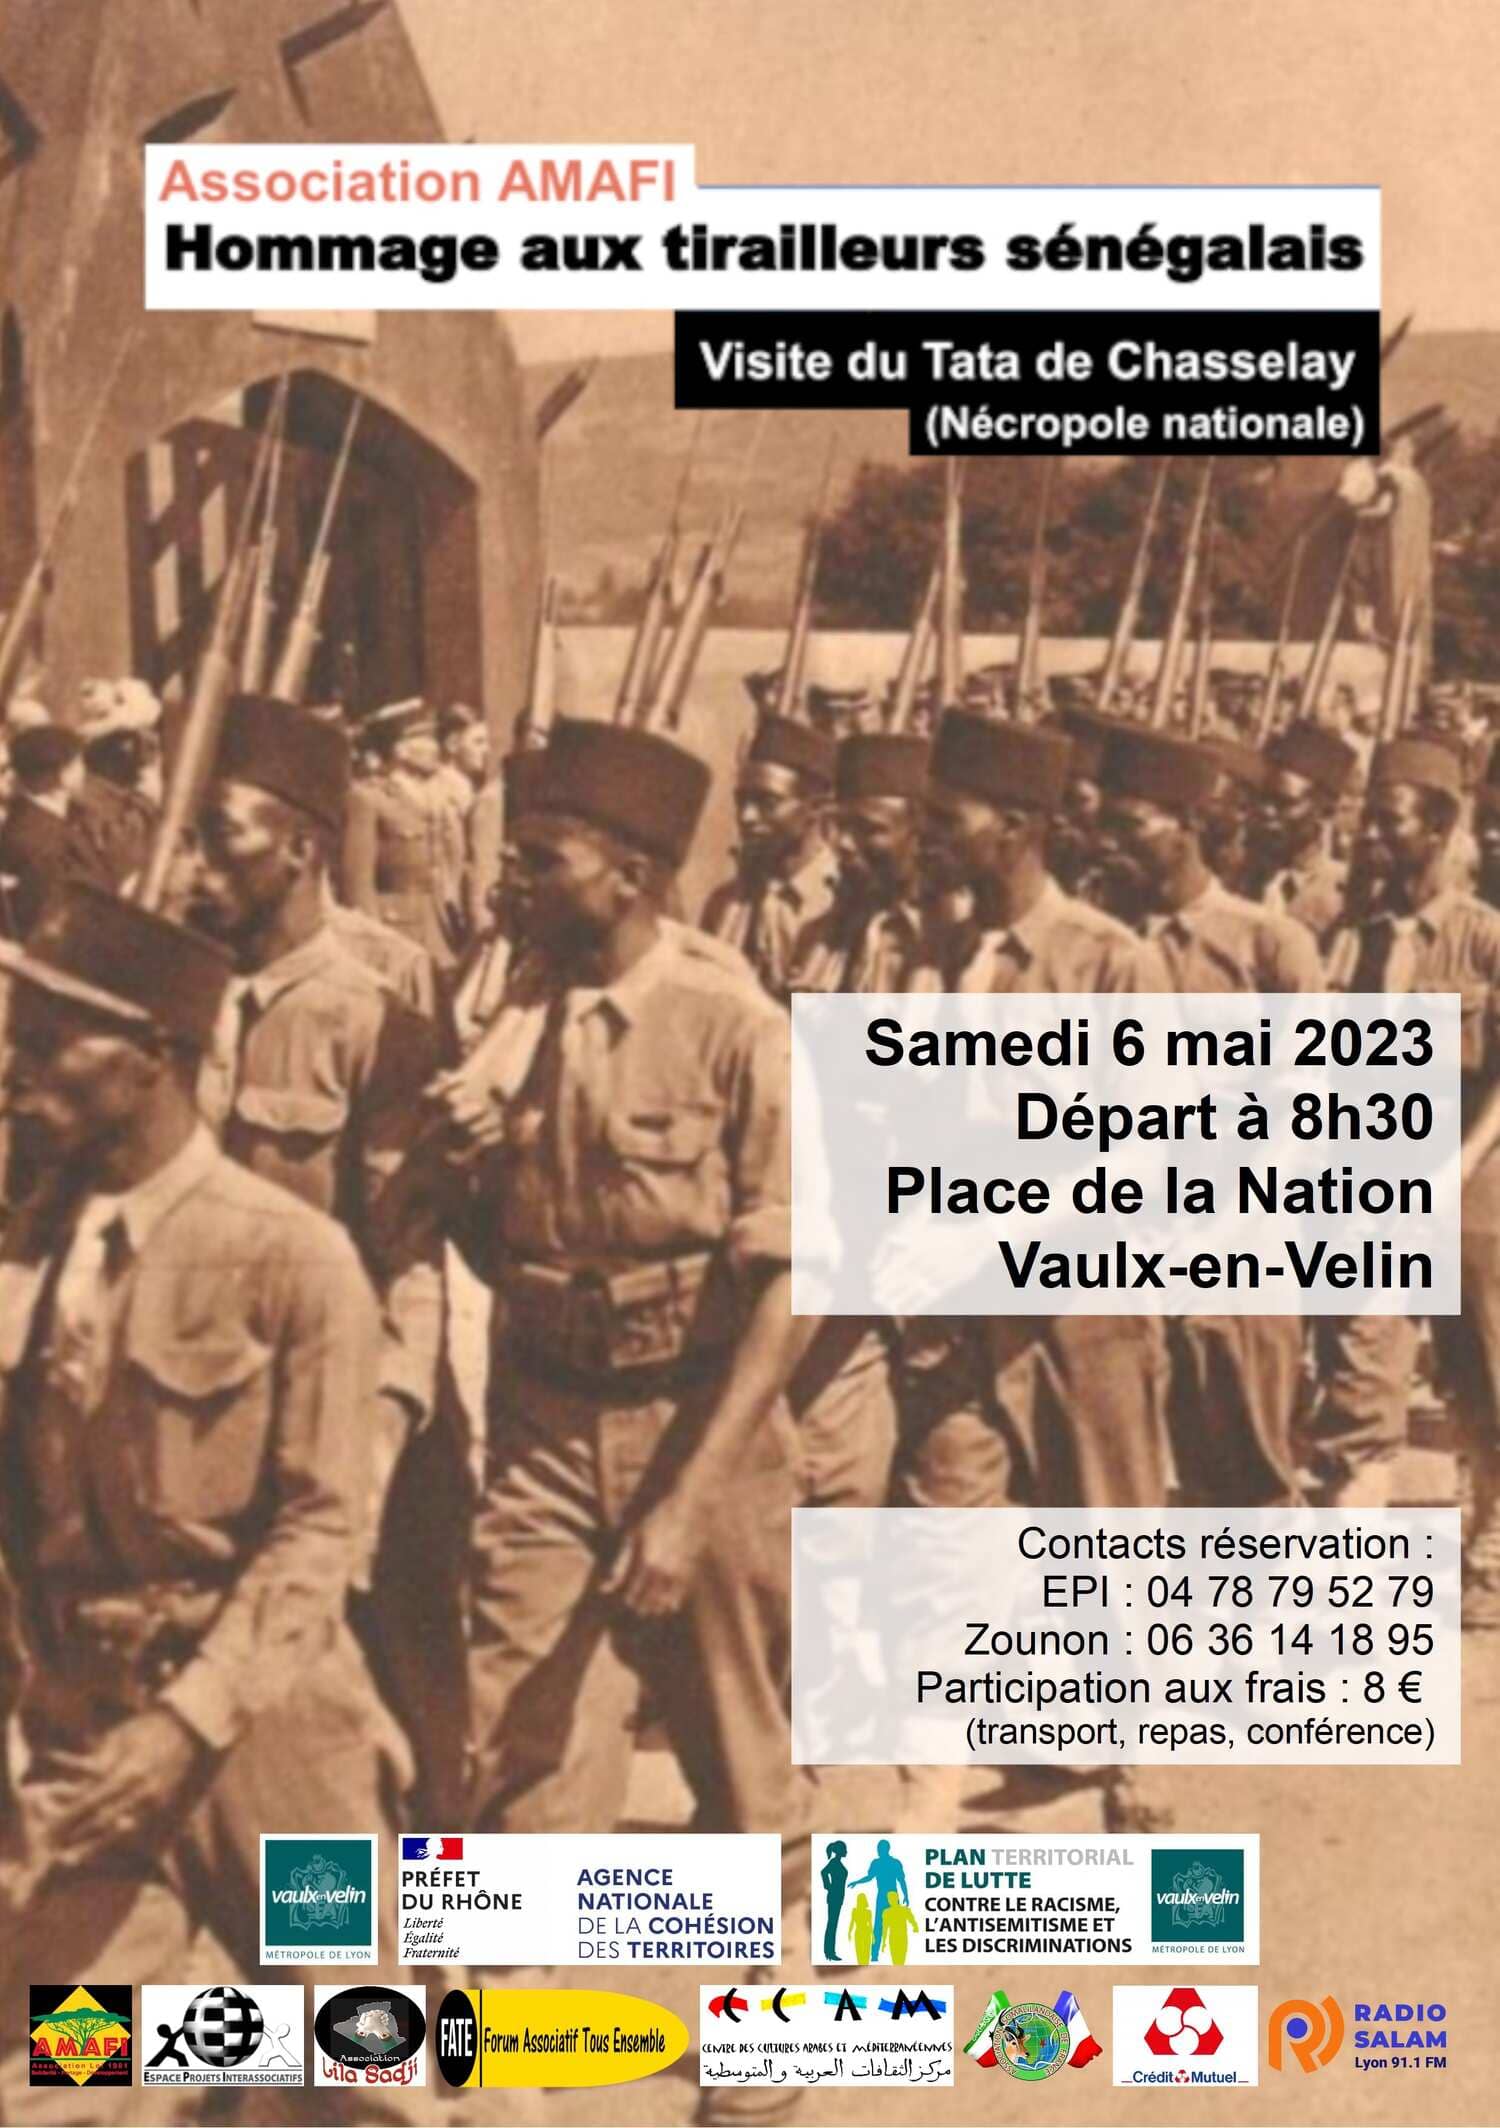 flyer association amafi hommage aux tirailleurs senegalais dates 2023